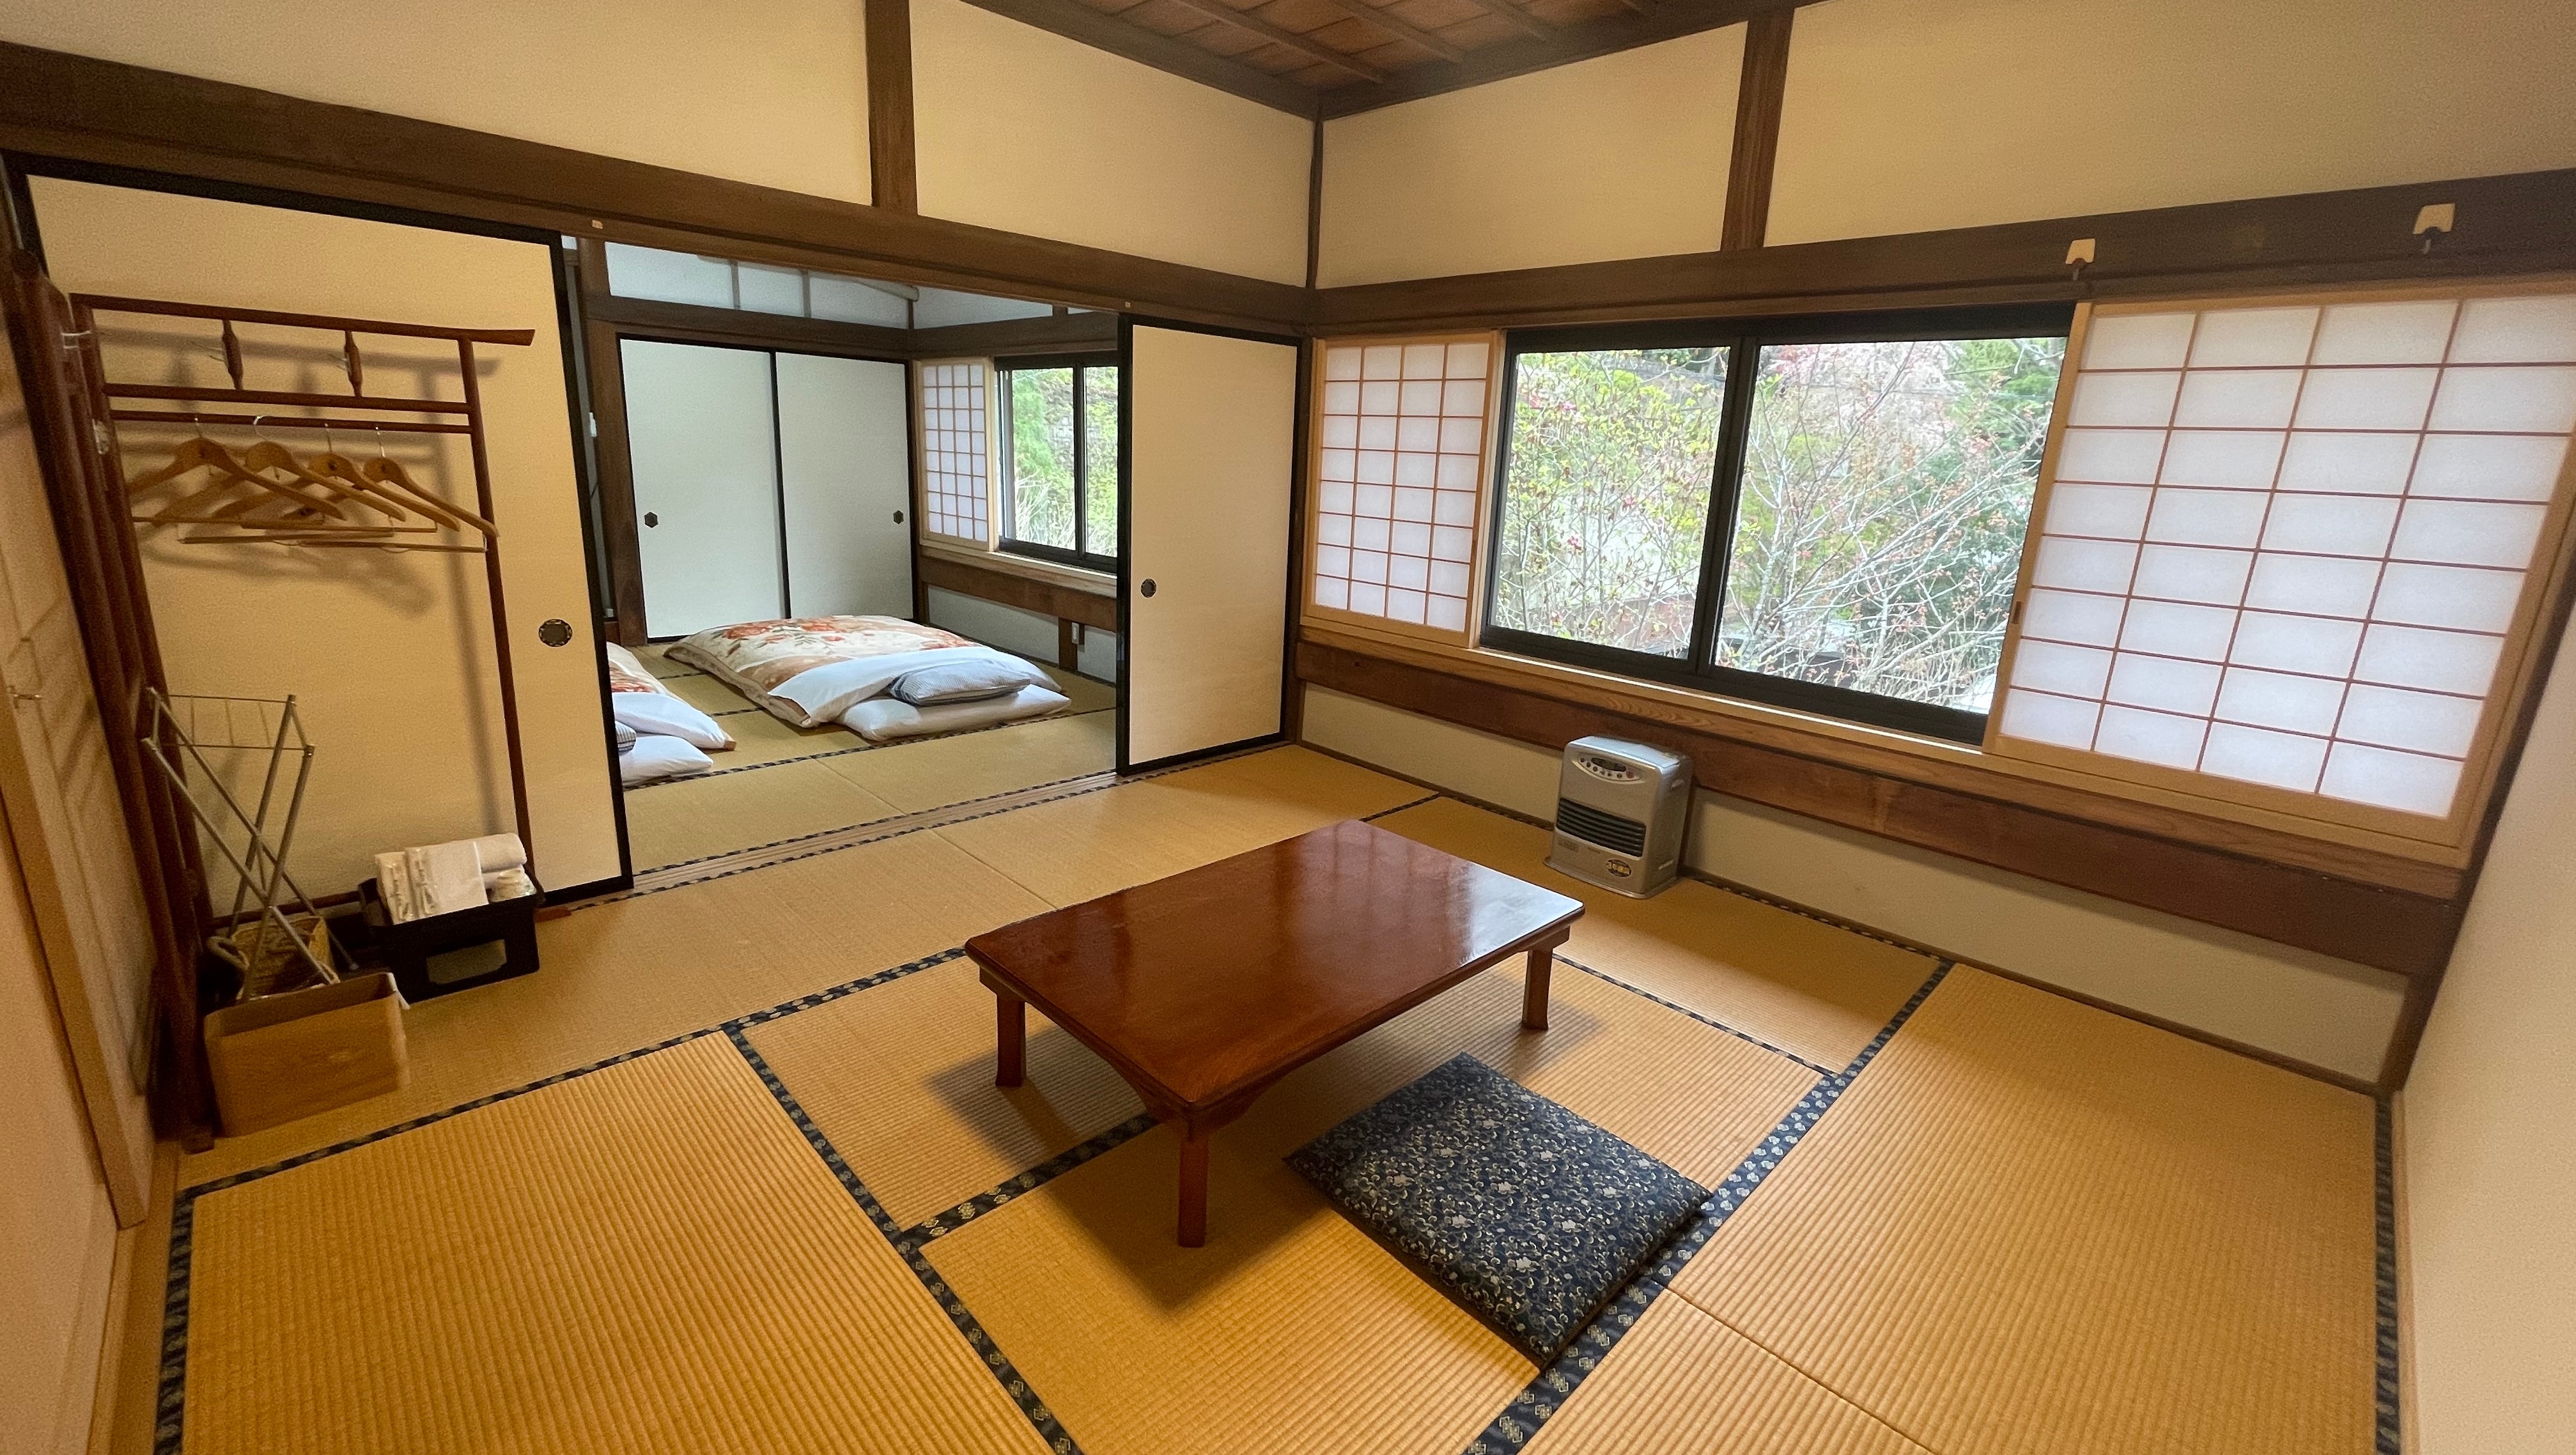 [Kamar bergaya Jepang 2 kamar] Kamar bergaya Jepang-16 tikar tatami untuk menyambut pagi shukubo yang menyenangkan